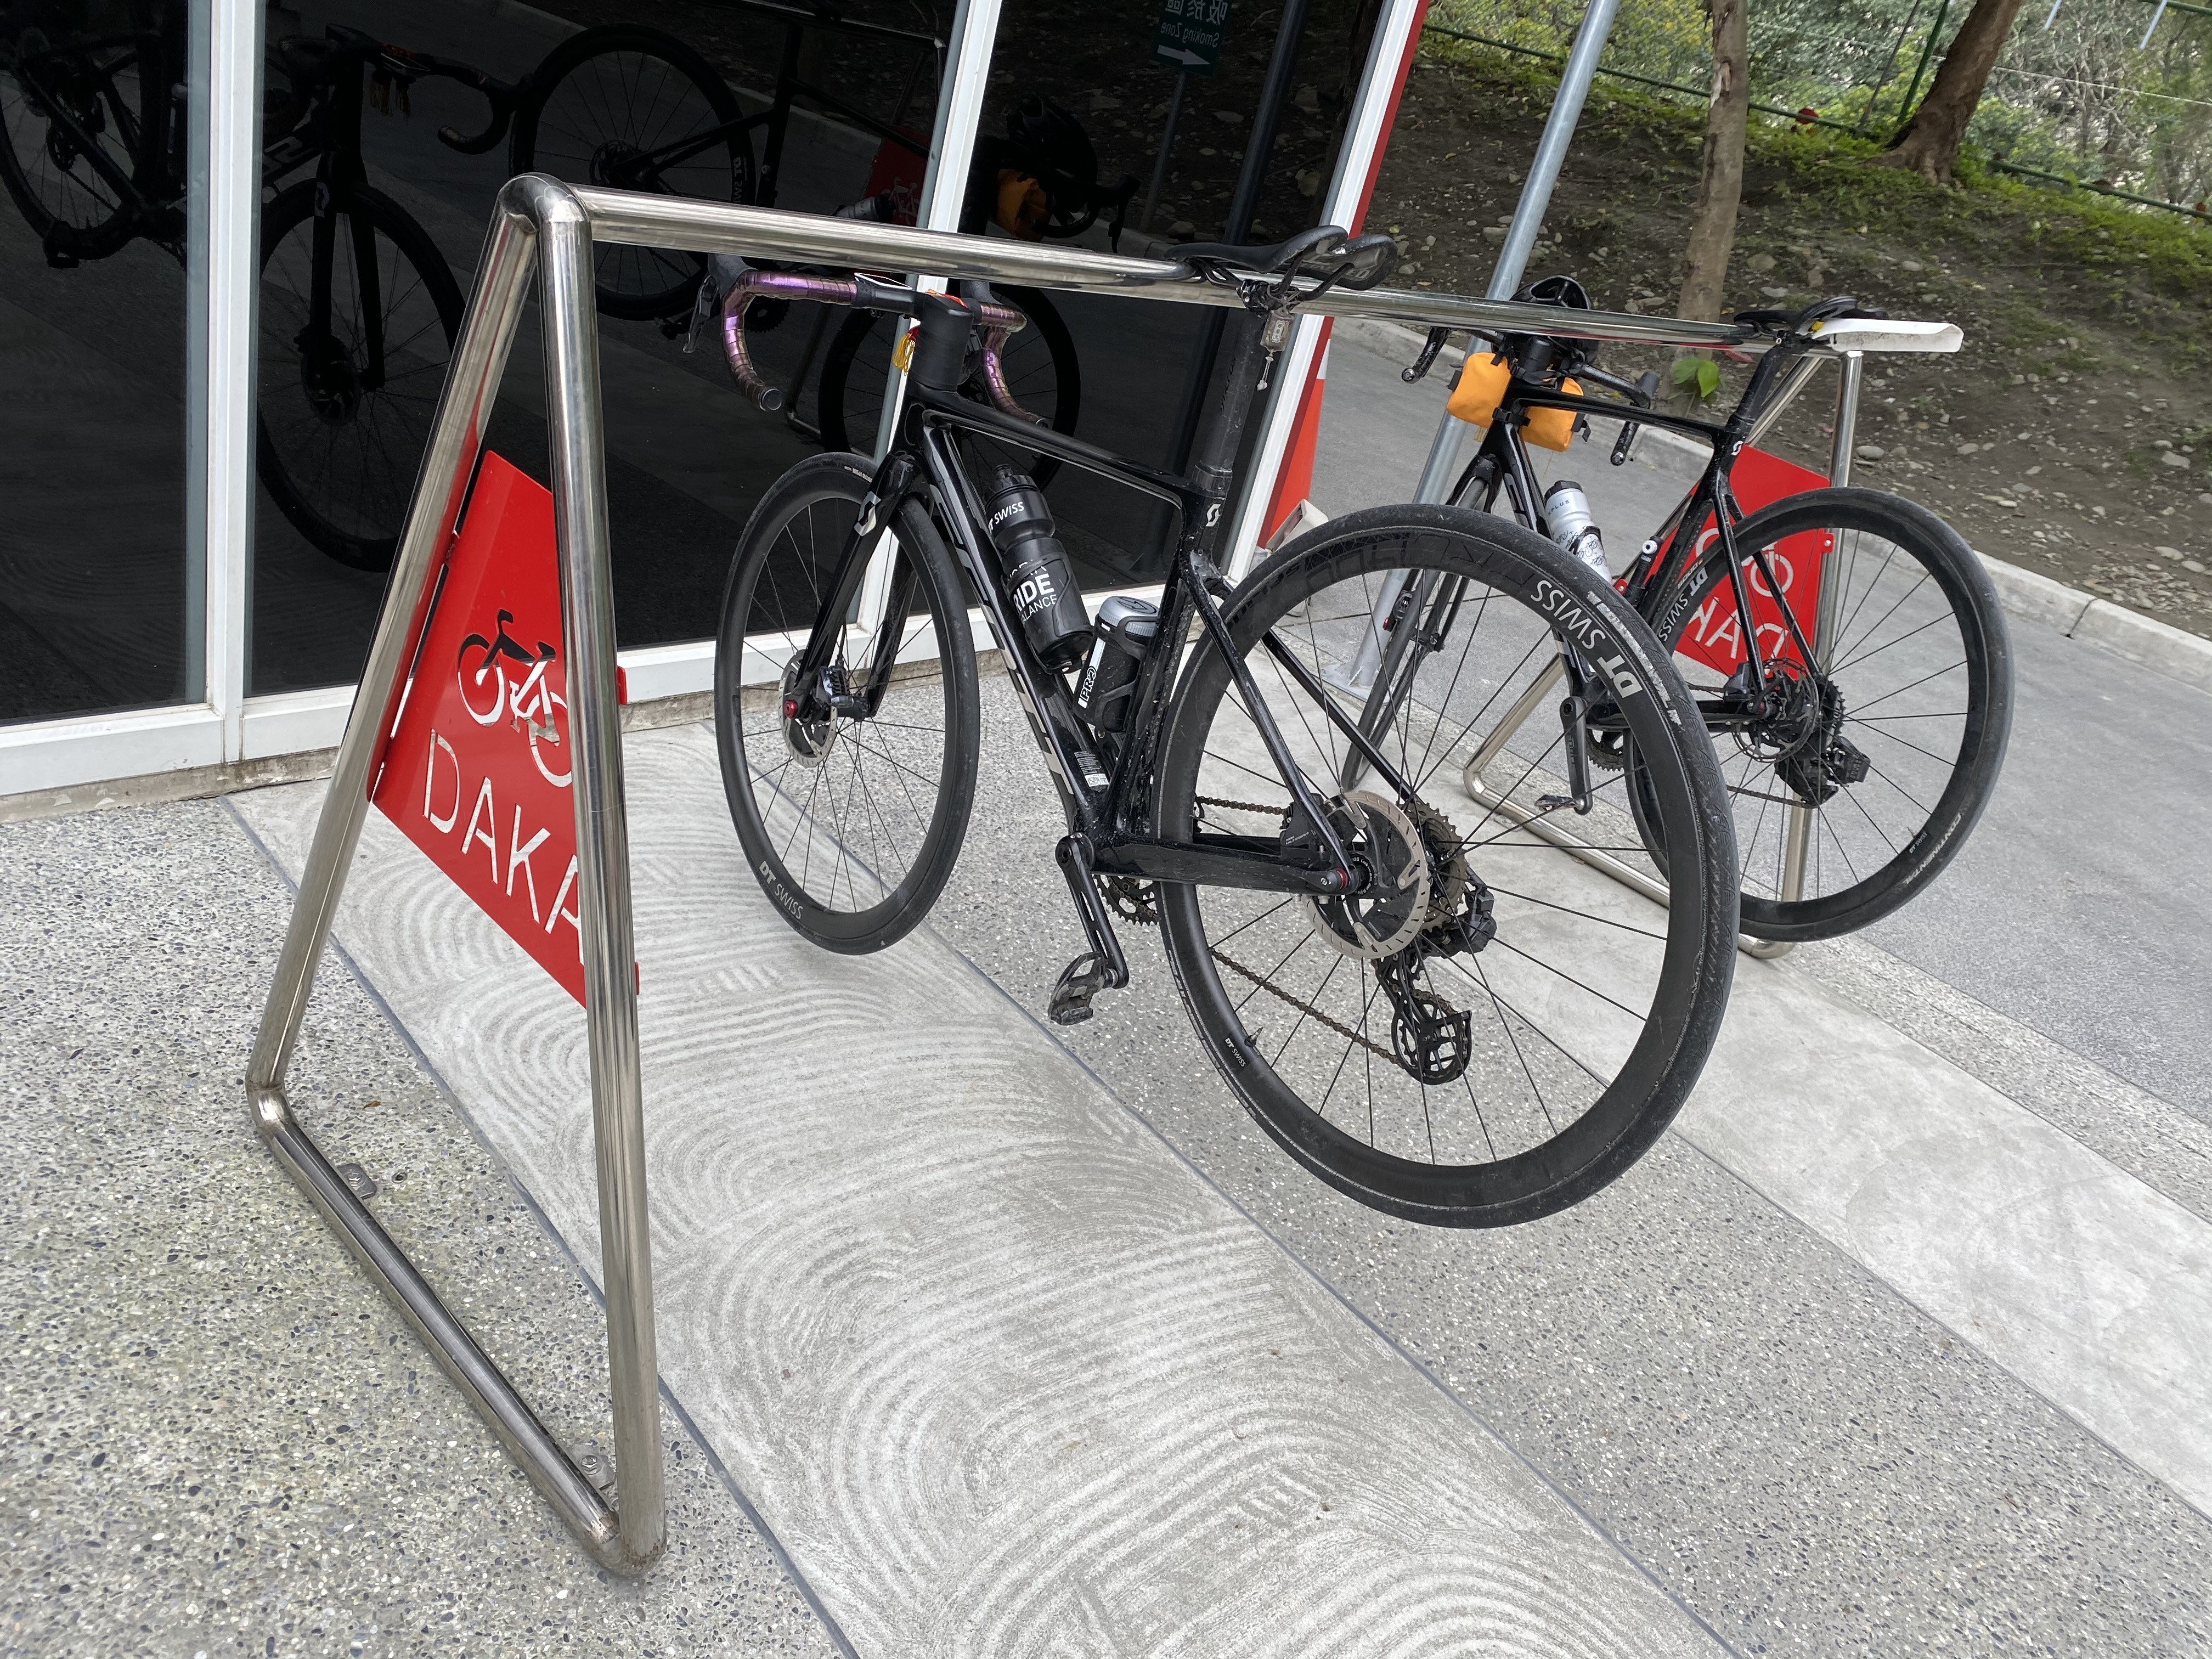 蘇花公路上的台泥DAKA園區設有自行車架，對於單車人來說相當友善。